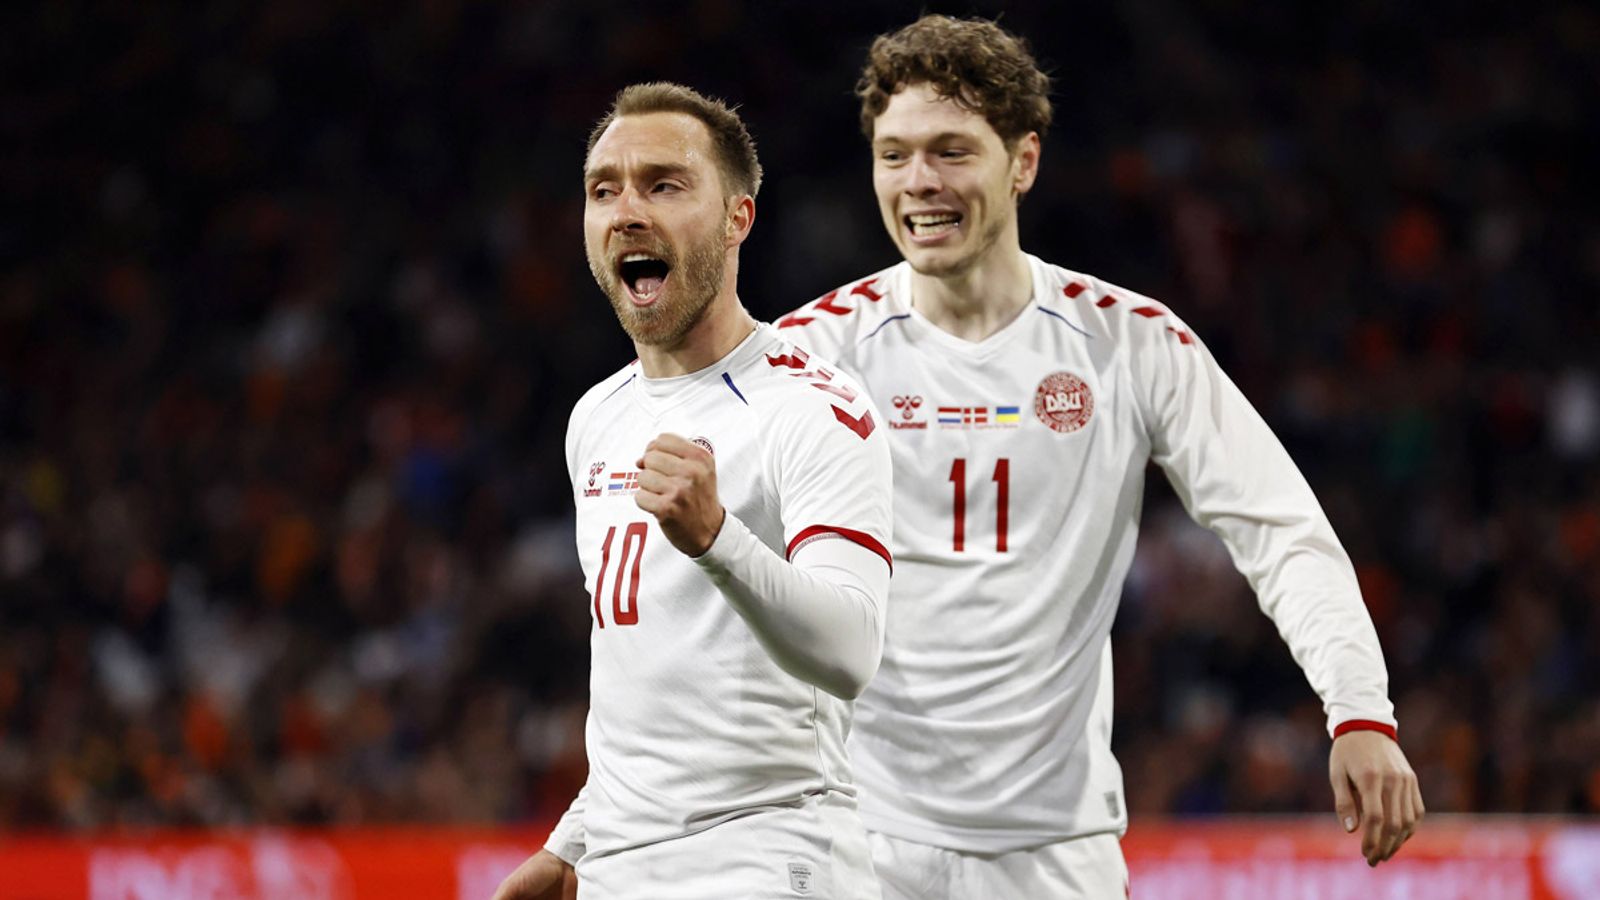 Voetbalnieuws: Eriksen viert comeback met Blitztor – Qatar, Engeland en Spanje wint |  voetbal nieuws